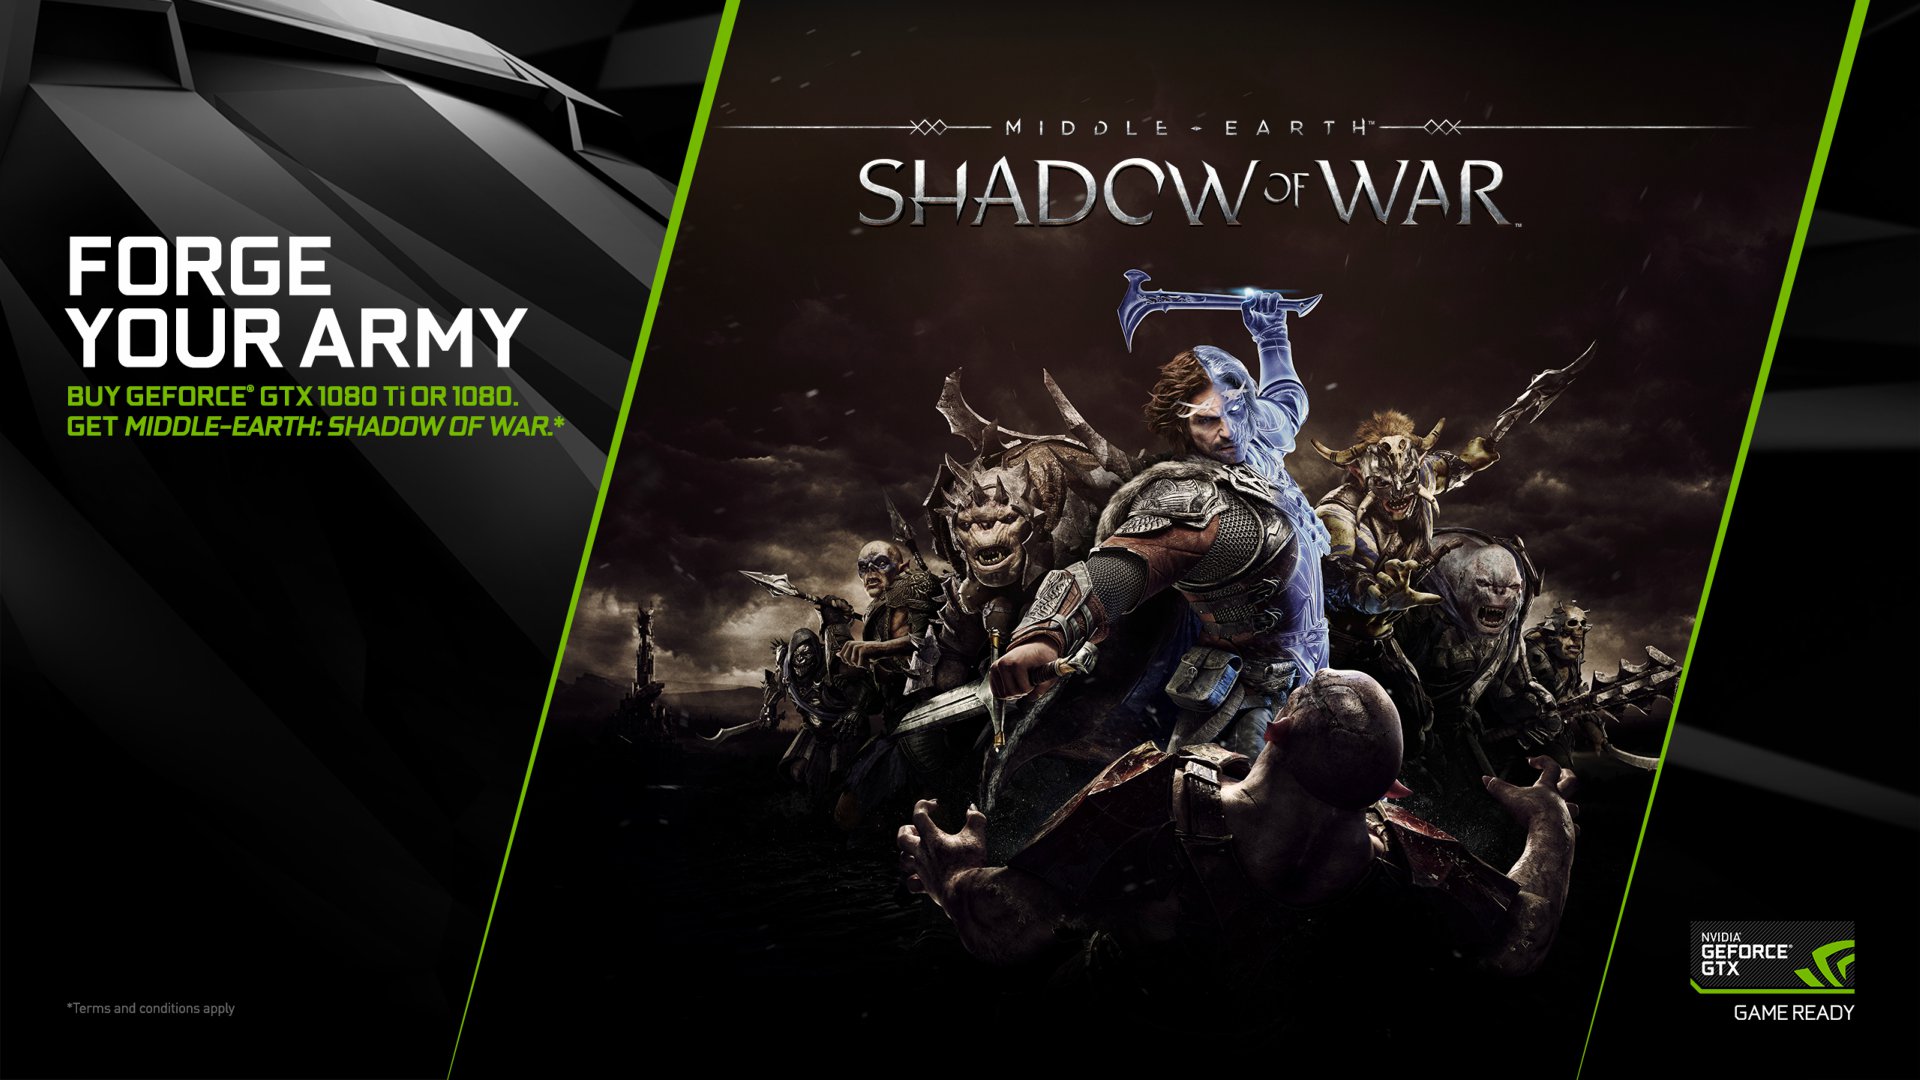 Nhận miễn phí Middle-earth: Shadow of War khi mua VGA loại GTX 1080 và GTX 1080 Ti của NVIDIA- Tin Game